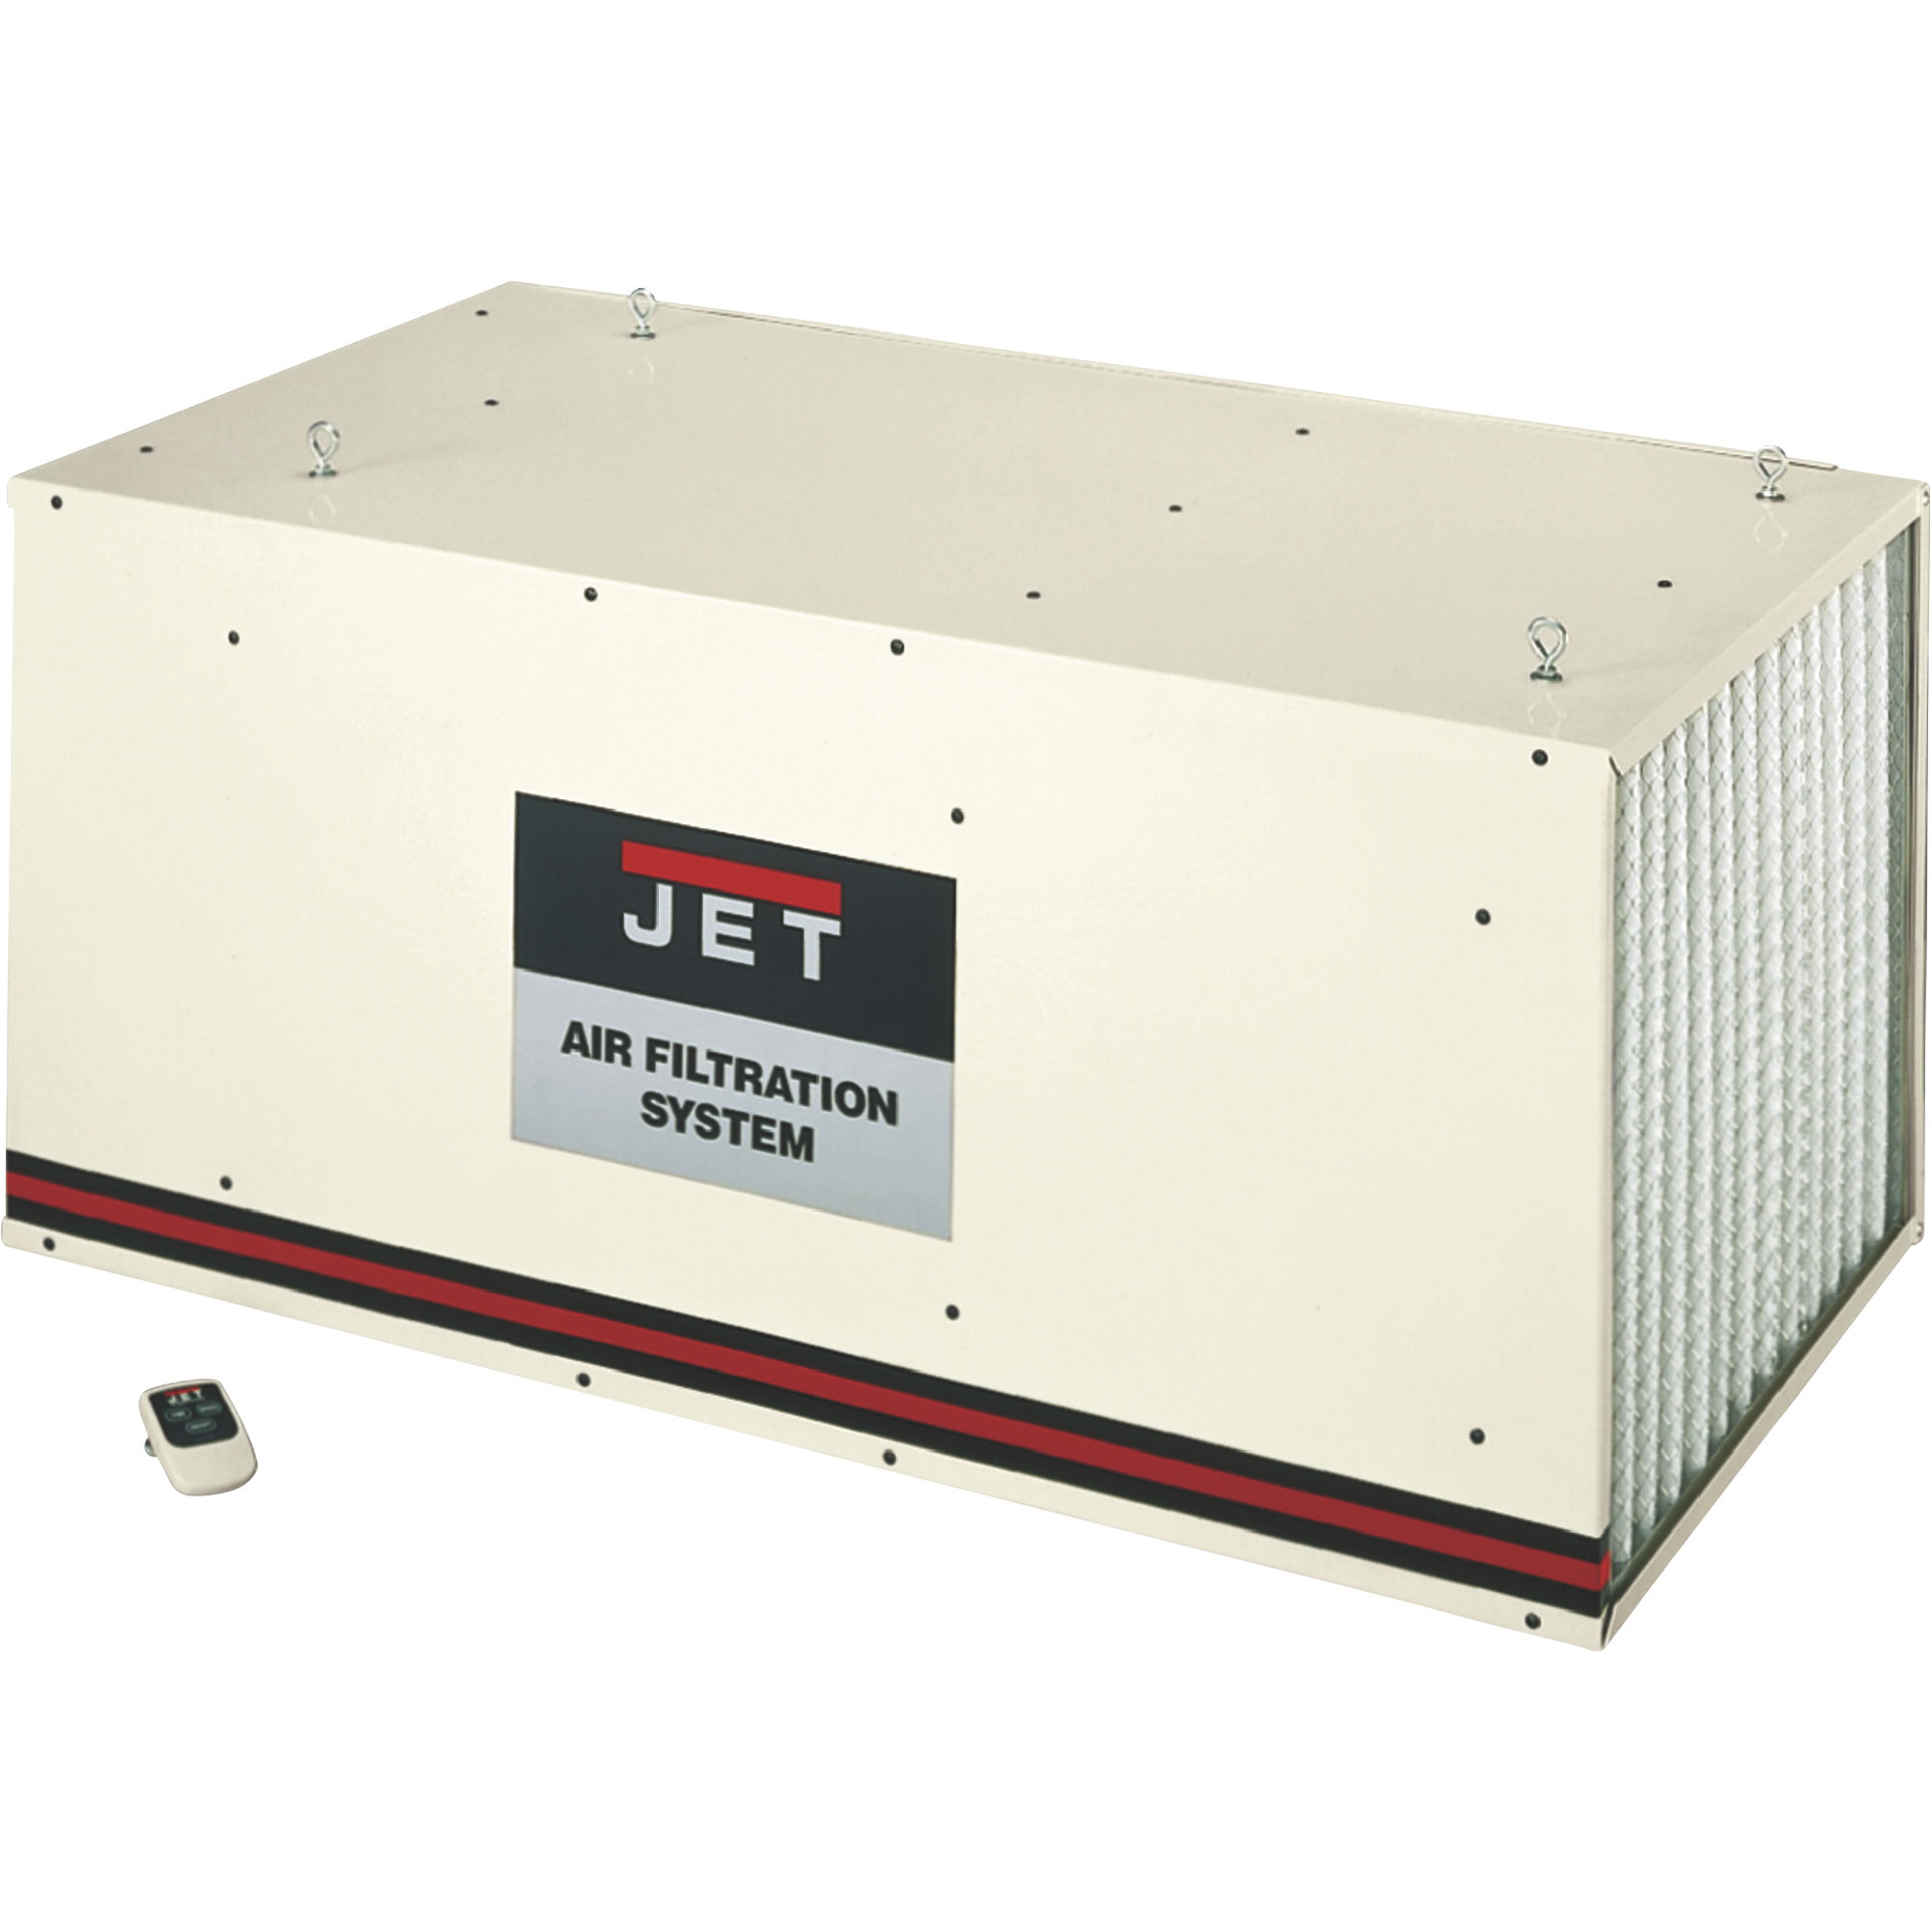 JET 1,700 CFM Air Filtration System, Model AFS-2000